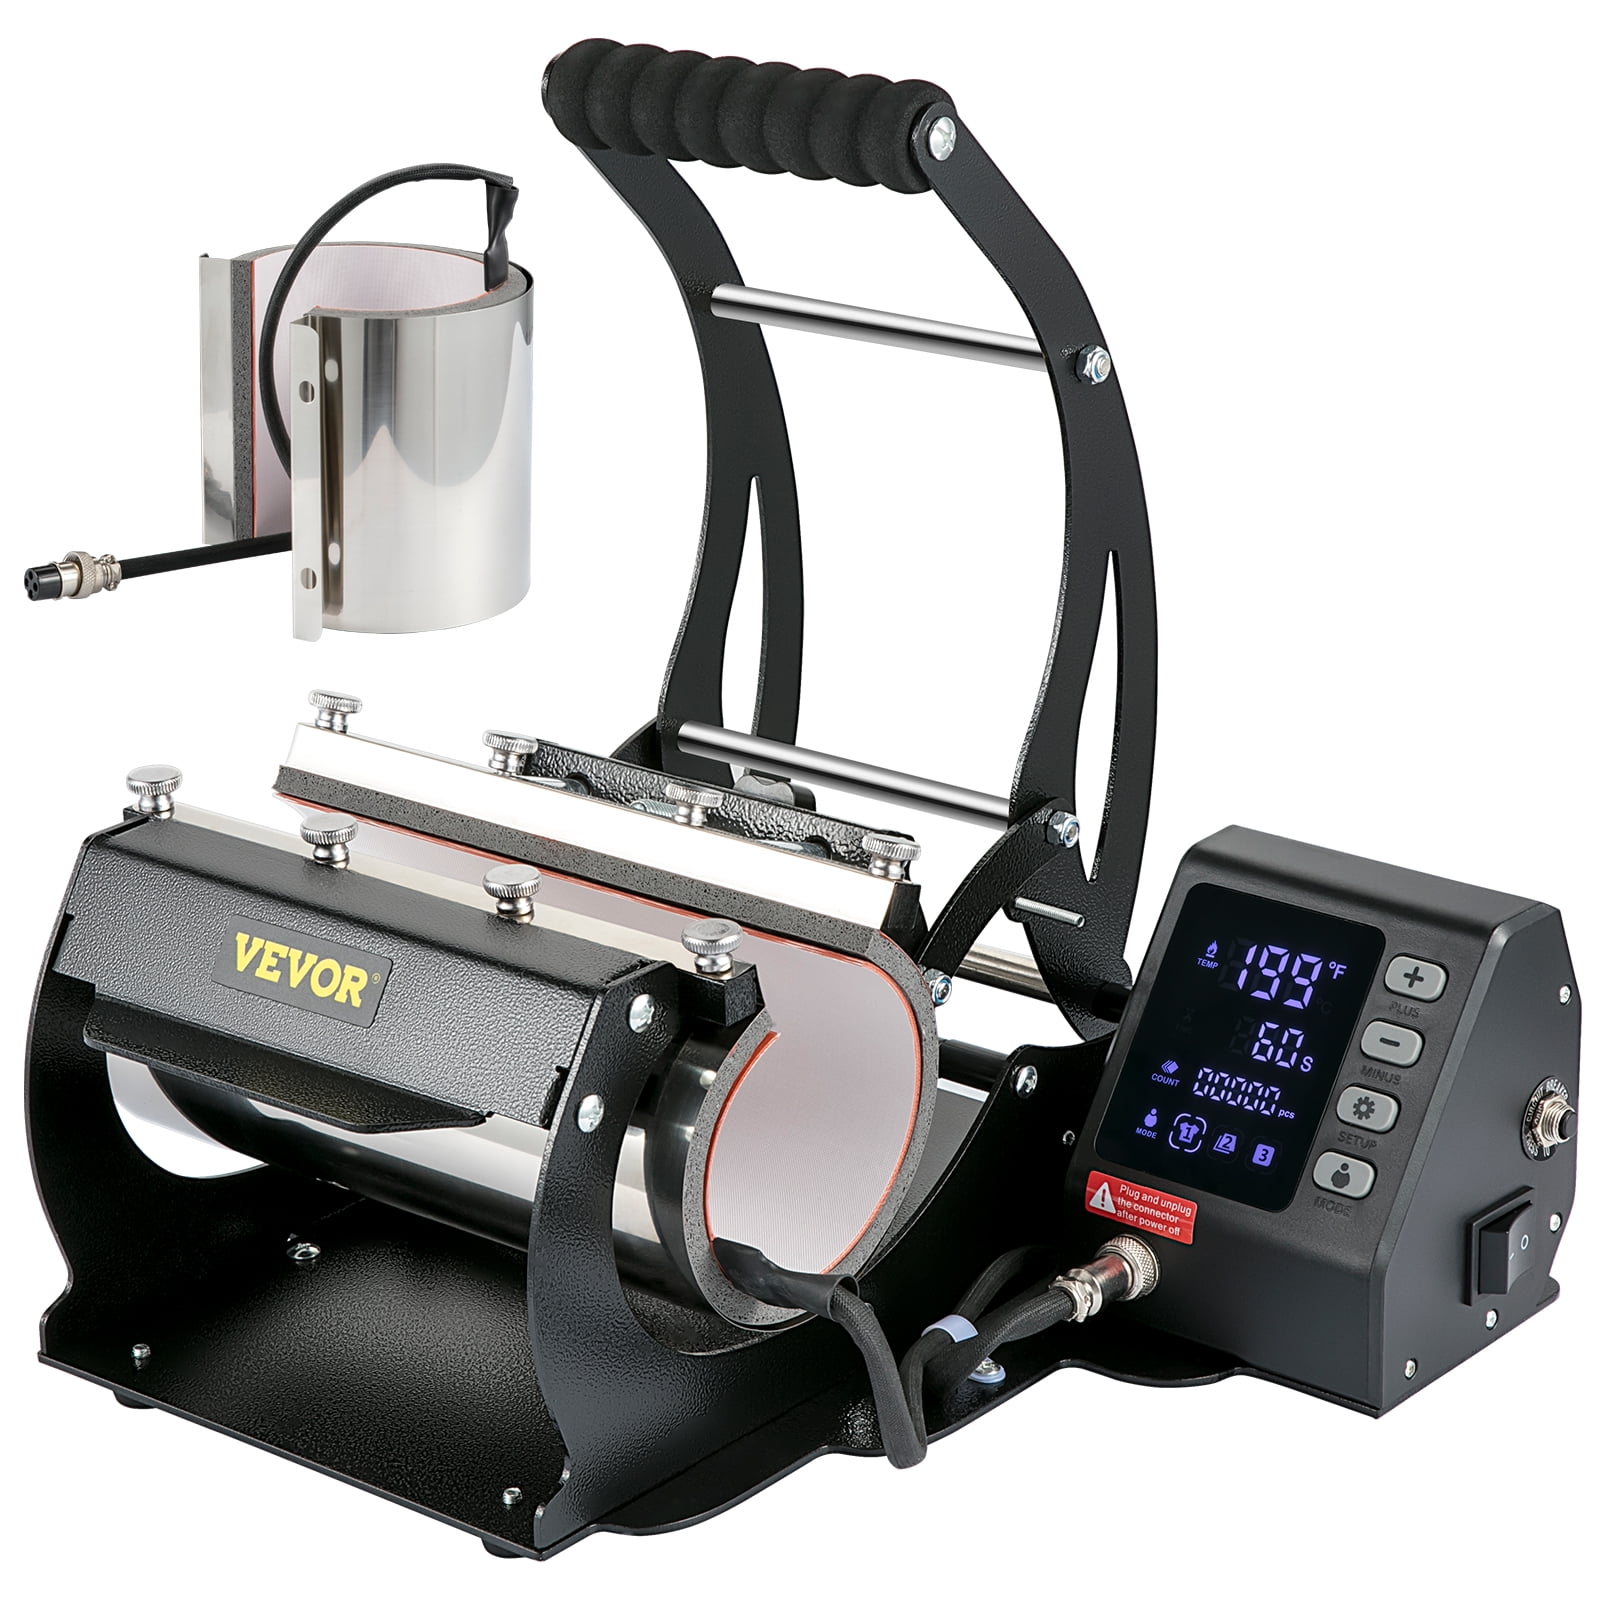 VEVOR 6 in 1 Heat Press Machine Digital Transfer Sublimation for DIY Mug Phone Case